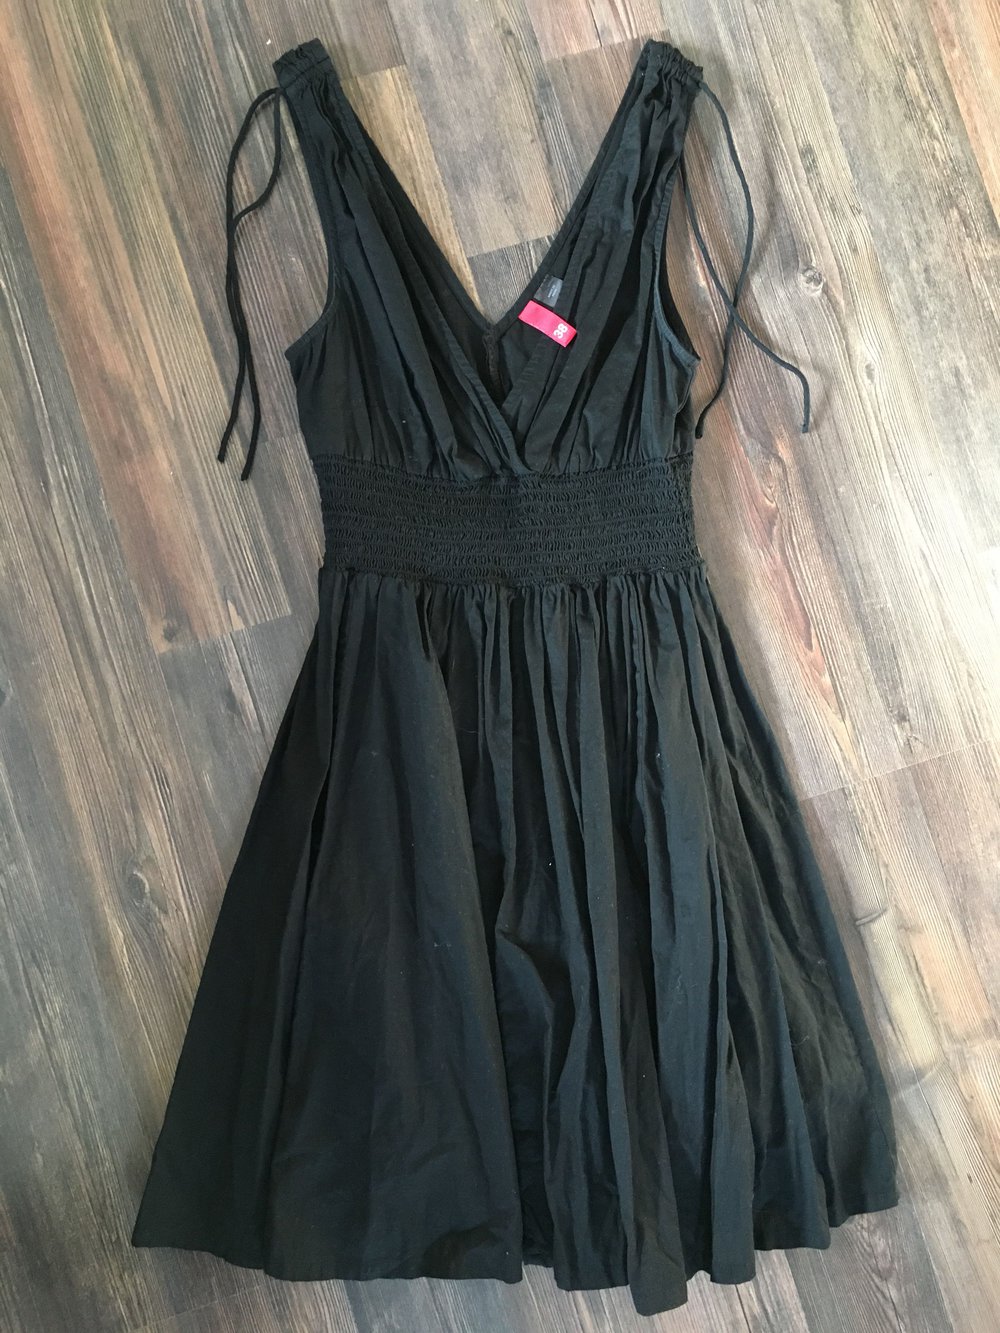 Wunderschönes schwarzes Kleid Gr 38 H&M 